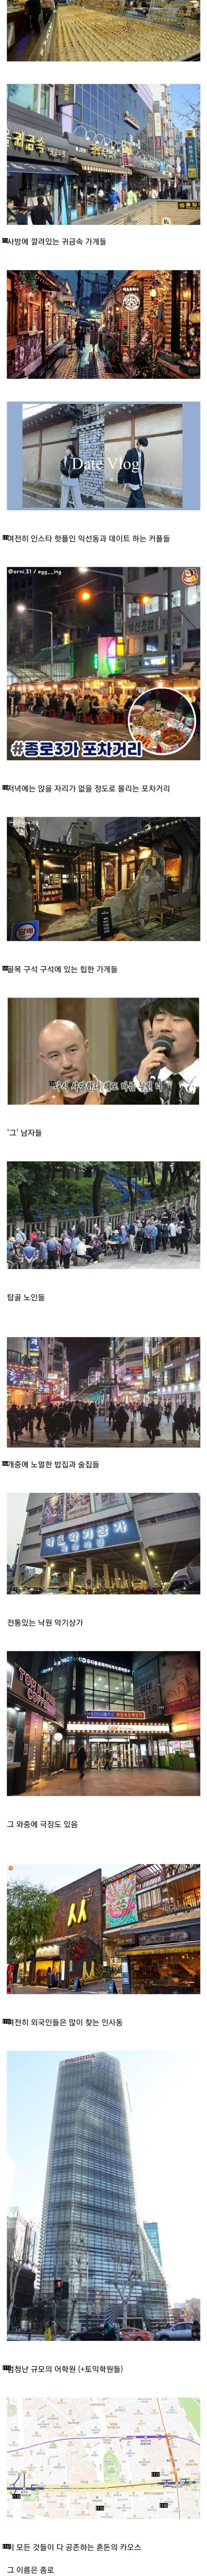 서울에서 가장 혼란스러운 곳.jpg